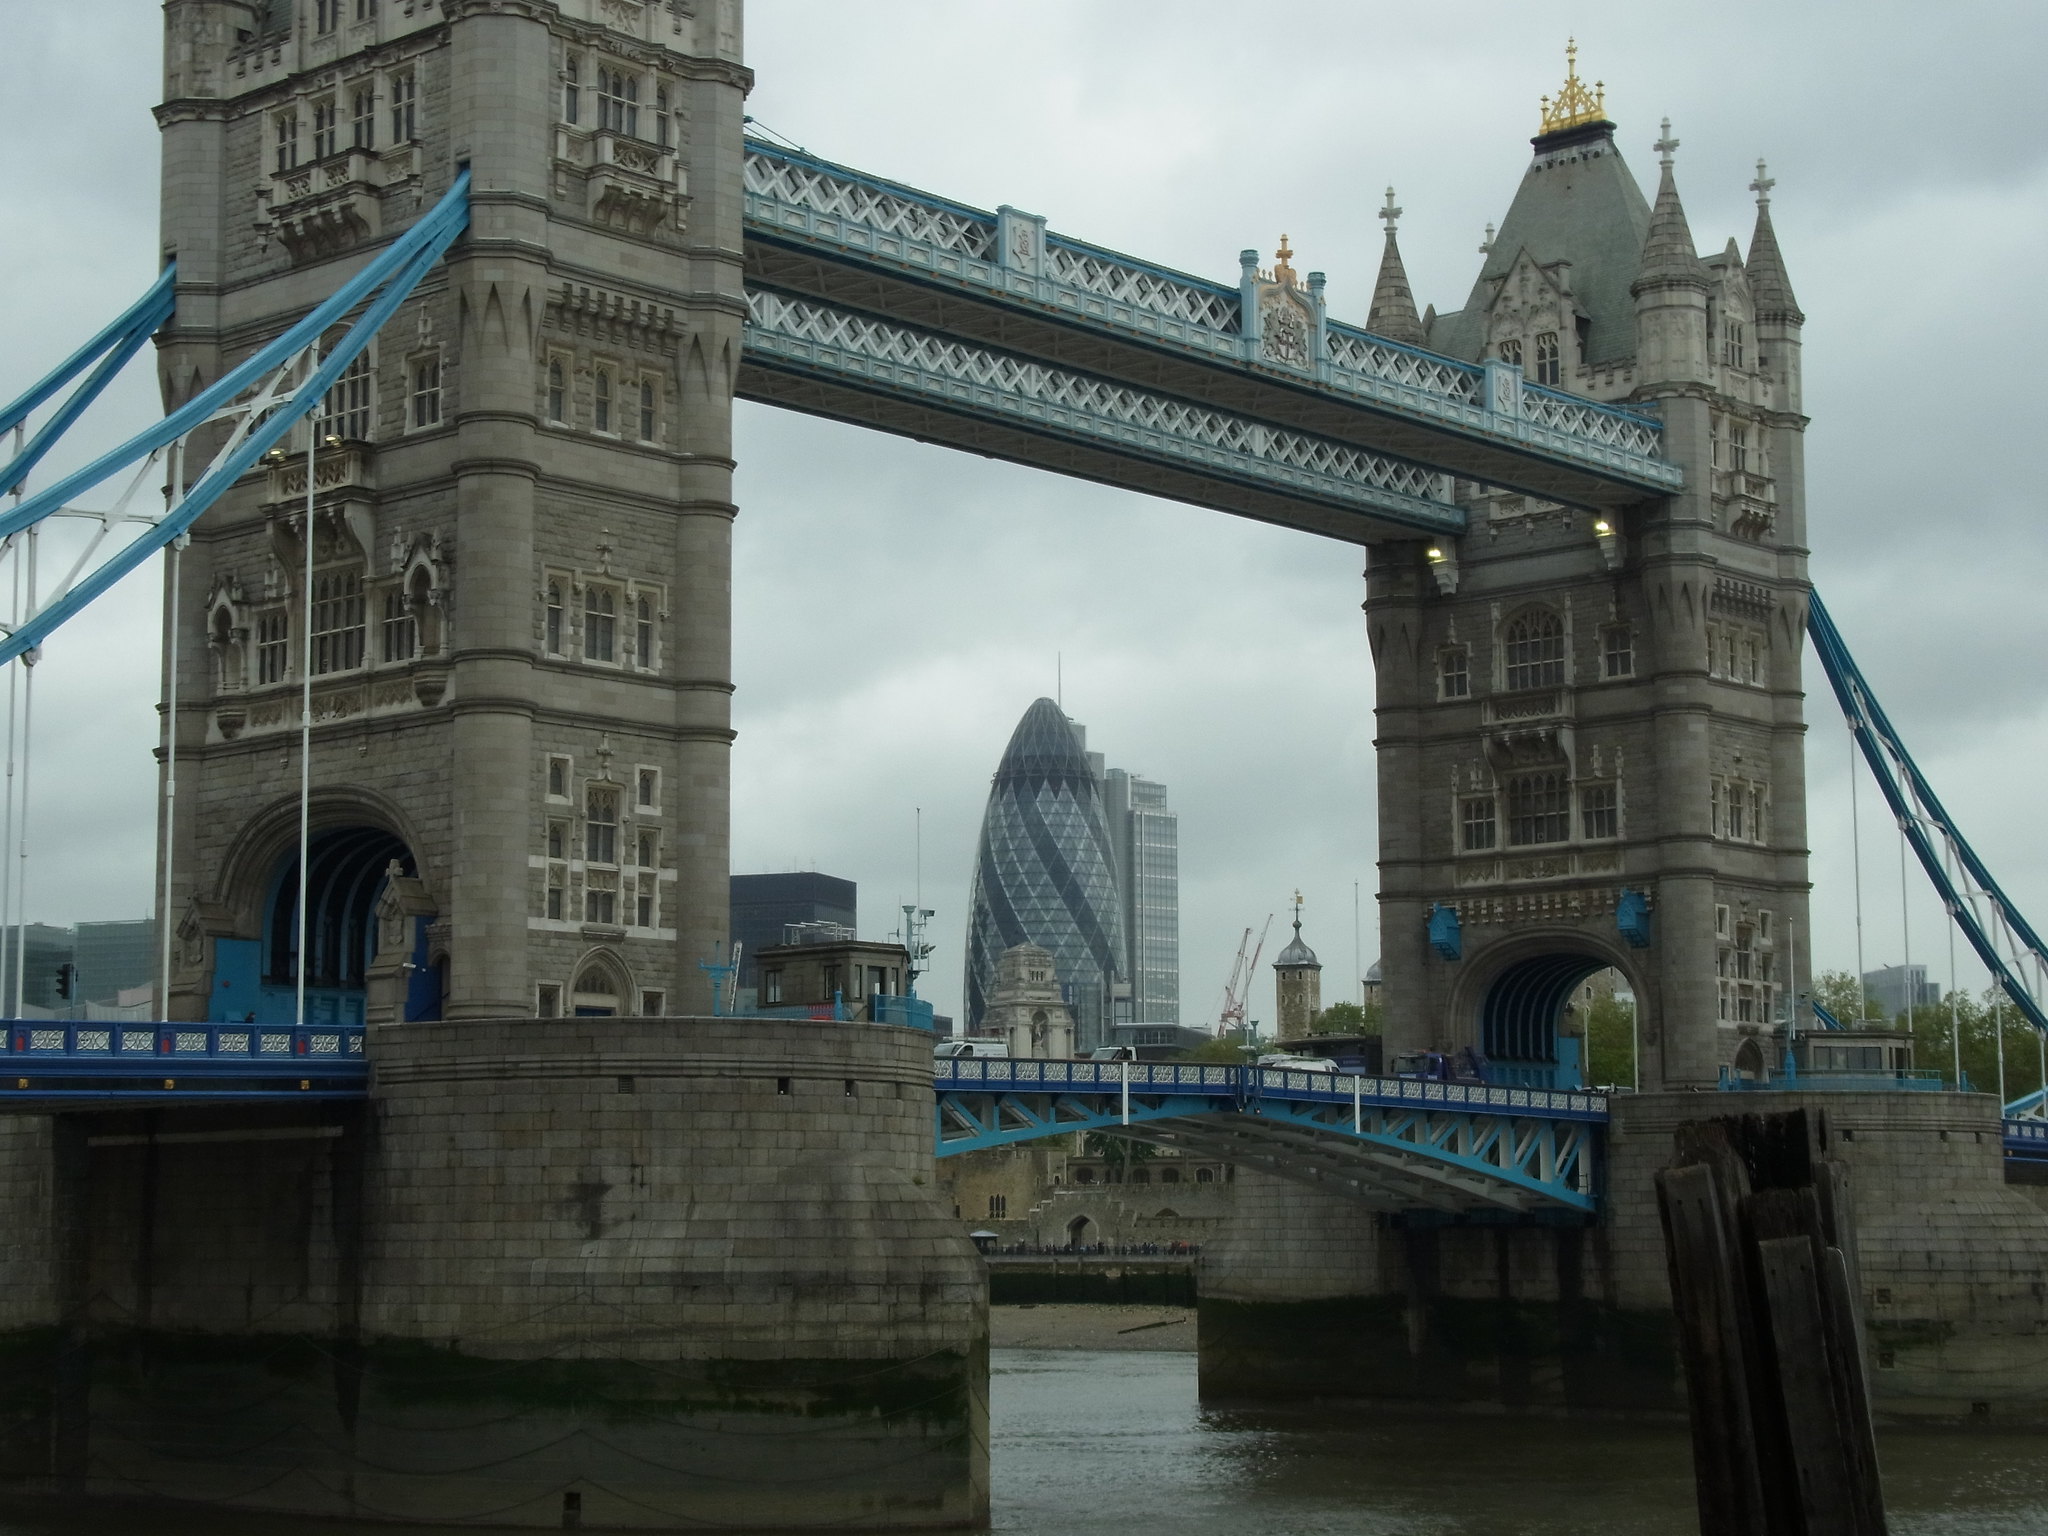 The Gherkin as seen through Tower Bridge